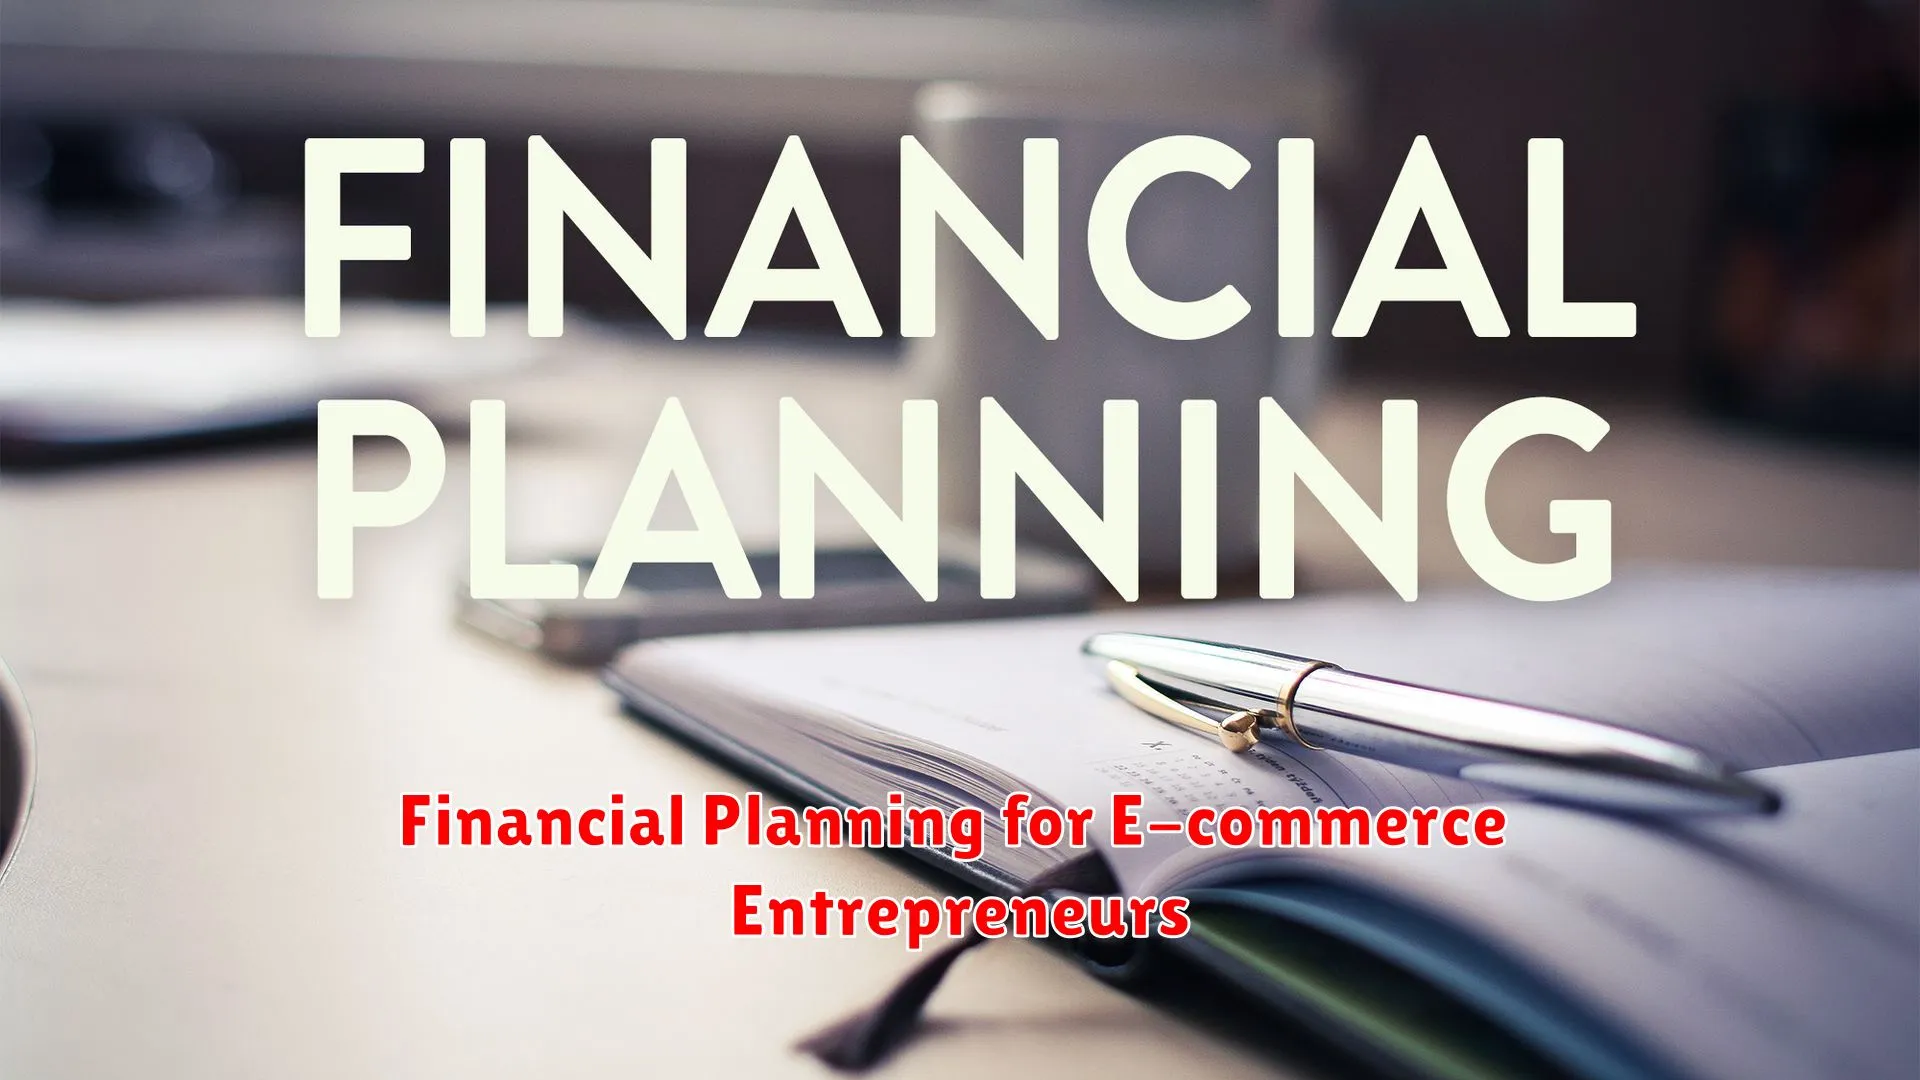 Financial Planning for E-commerce Entrepreneurs